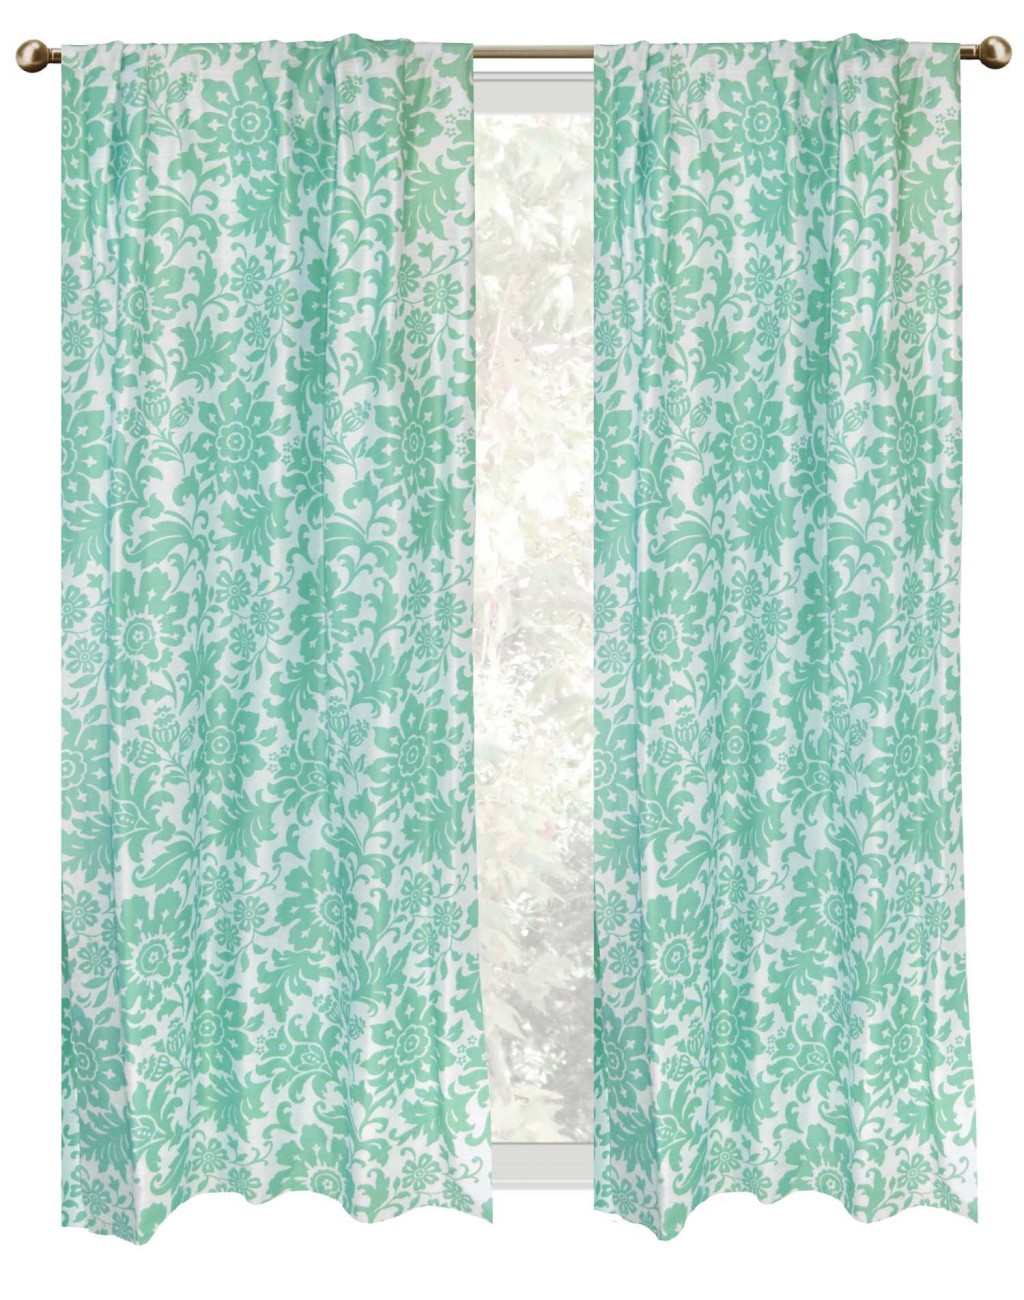 Seafoam Curtains in Curtain